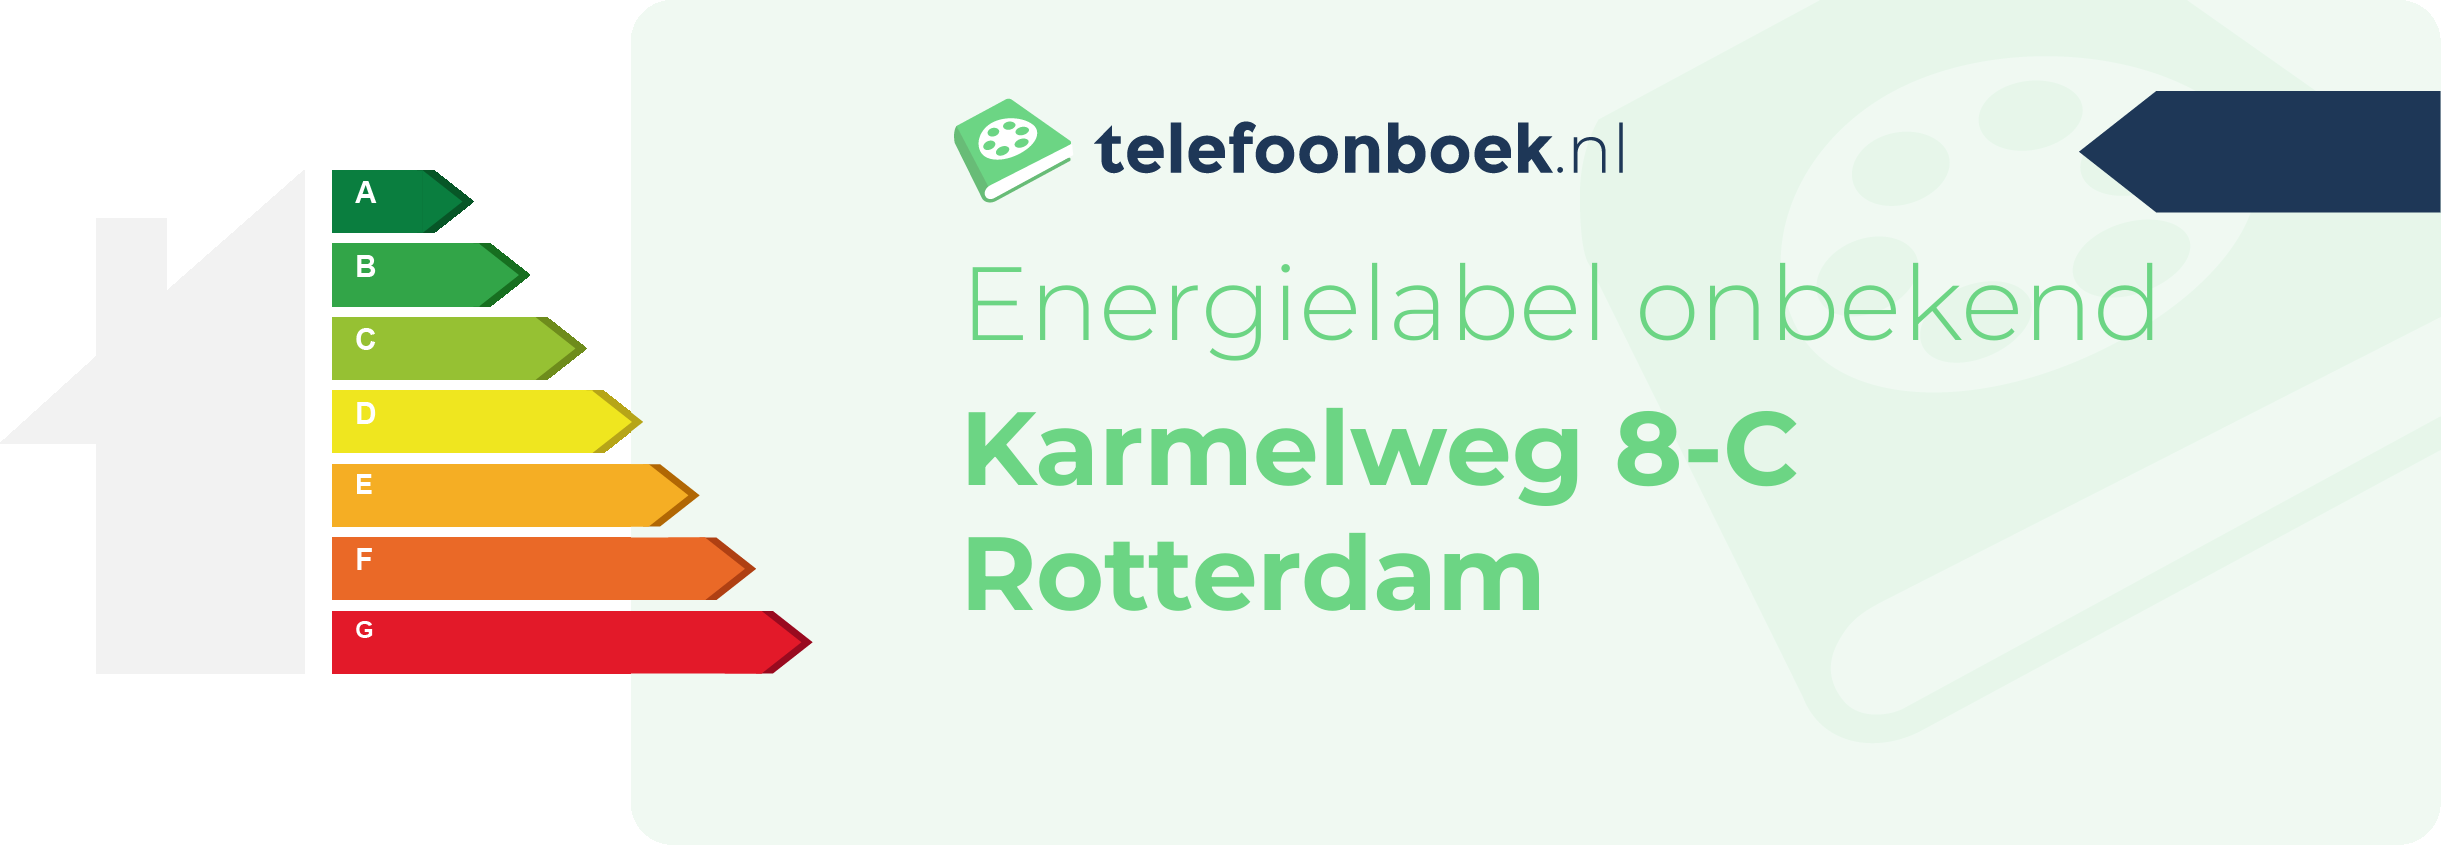 Energielabel Karmelweg 8-C Rotterdam